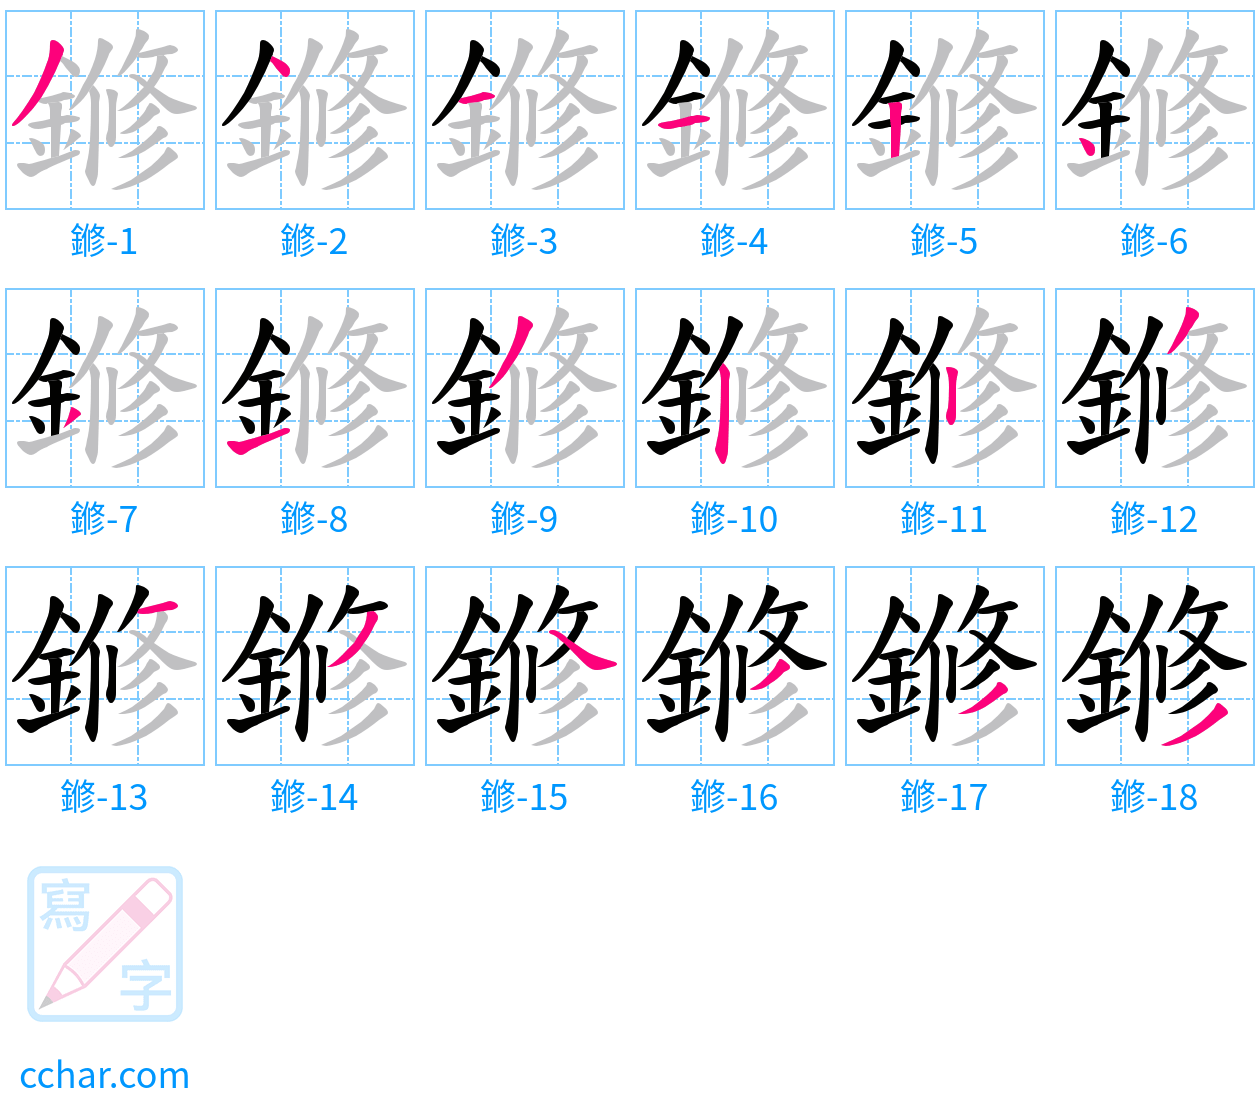 鎀 stroke order step-by-step diagram